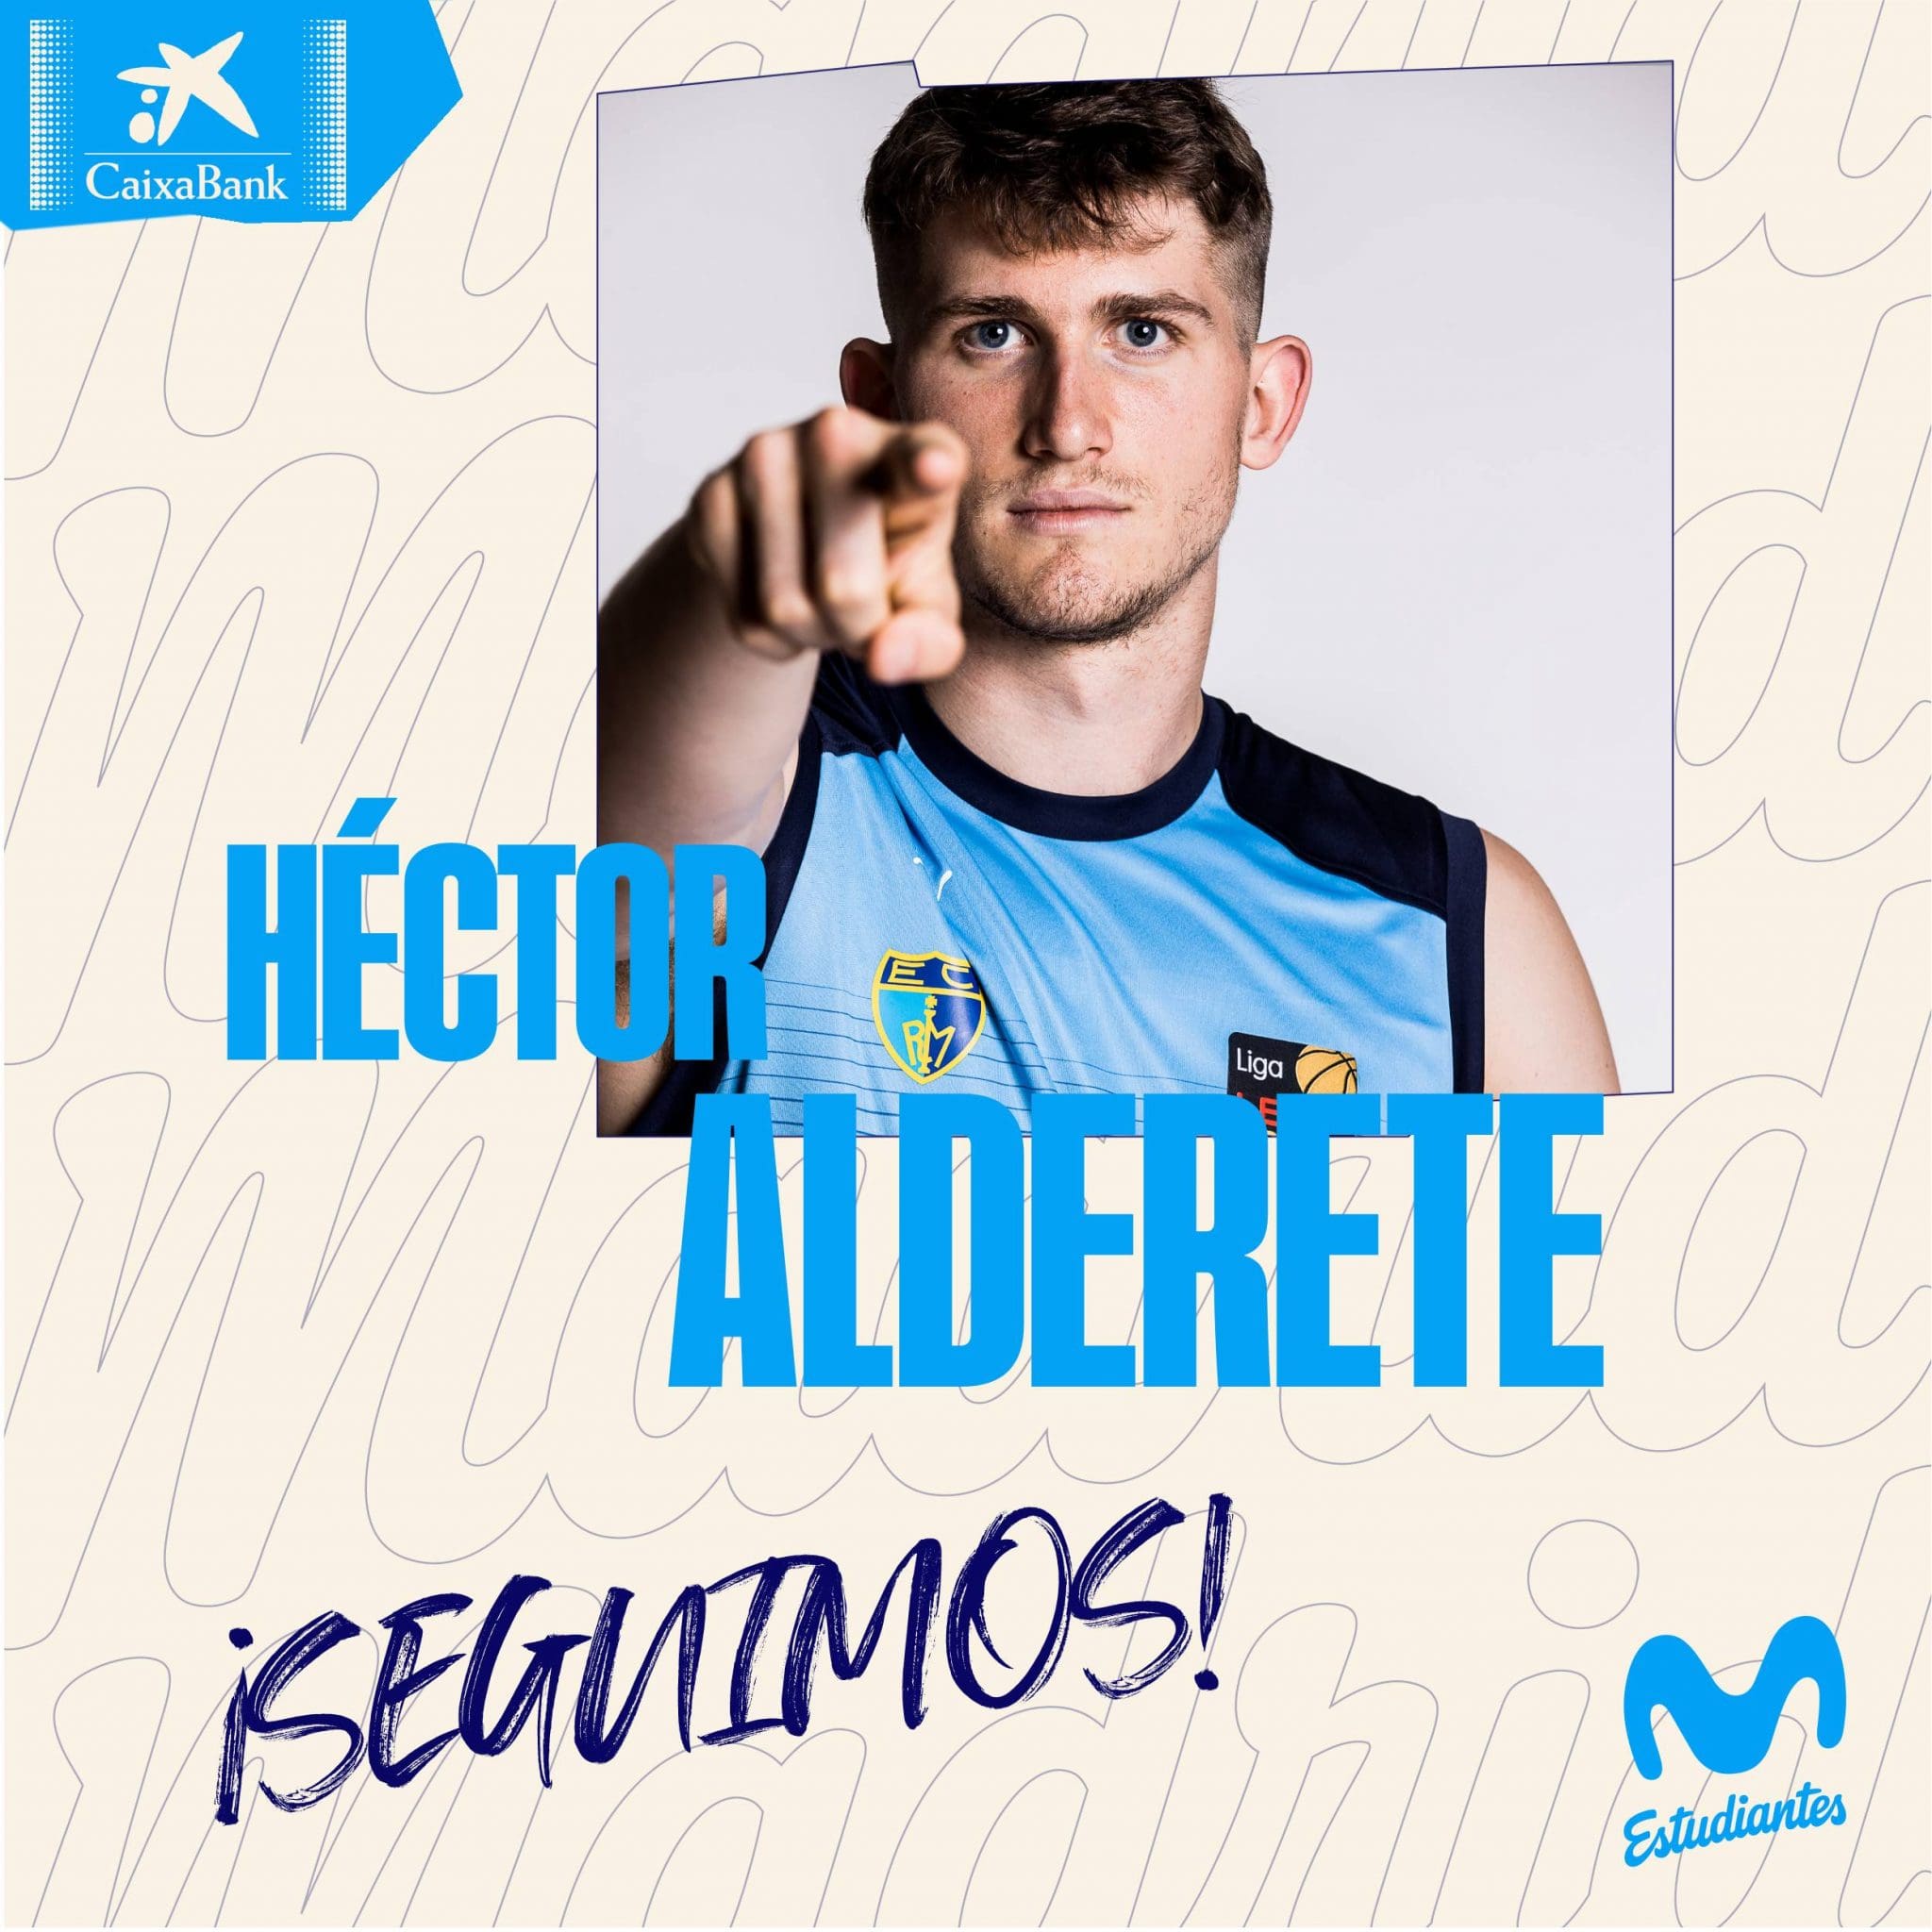 Héctor Alderete seguirá creciendo en Movistar Estudiantes